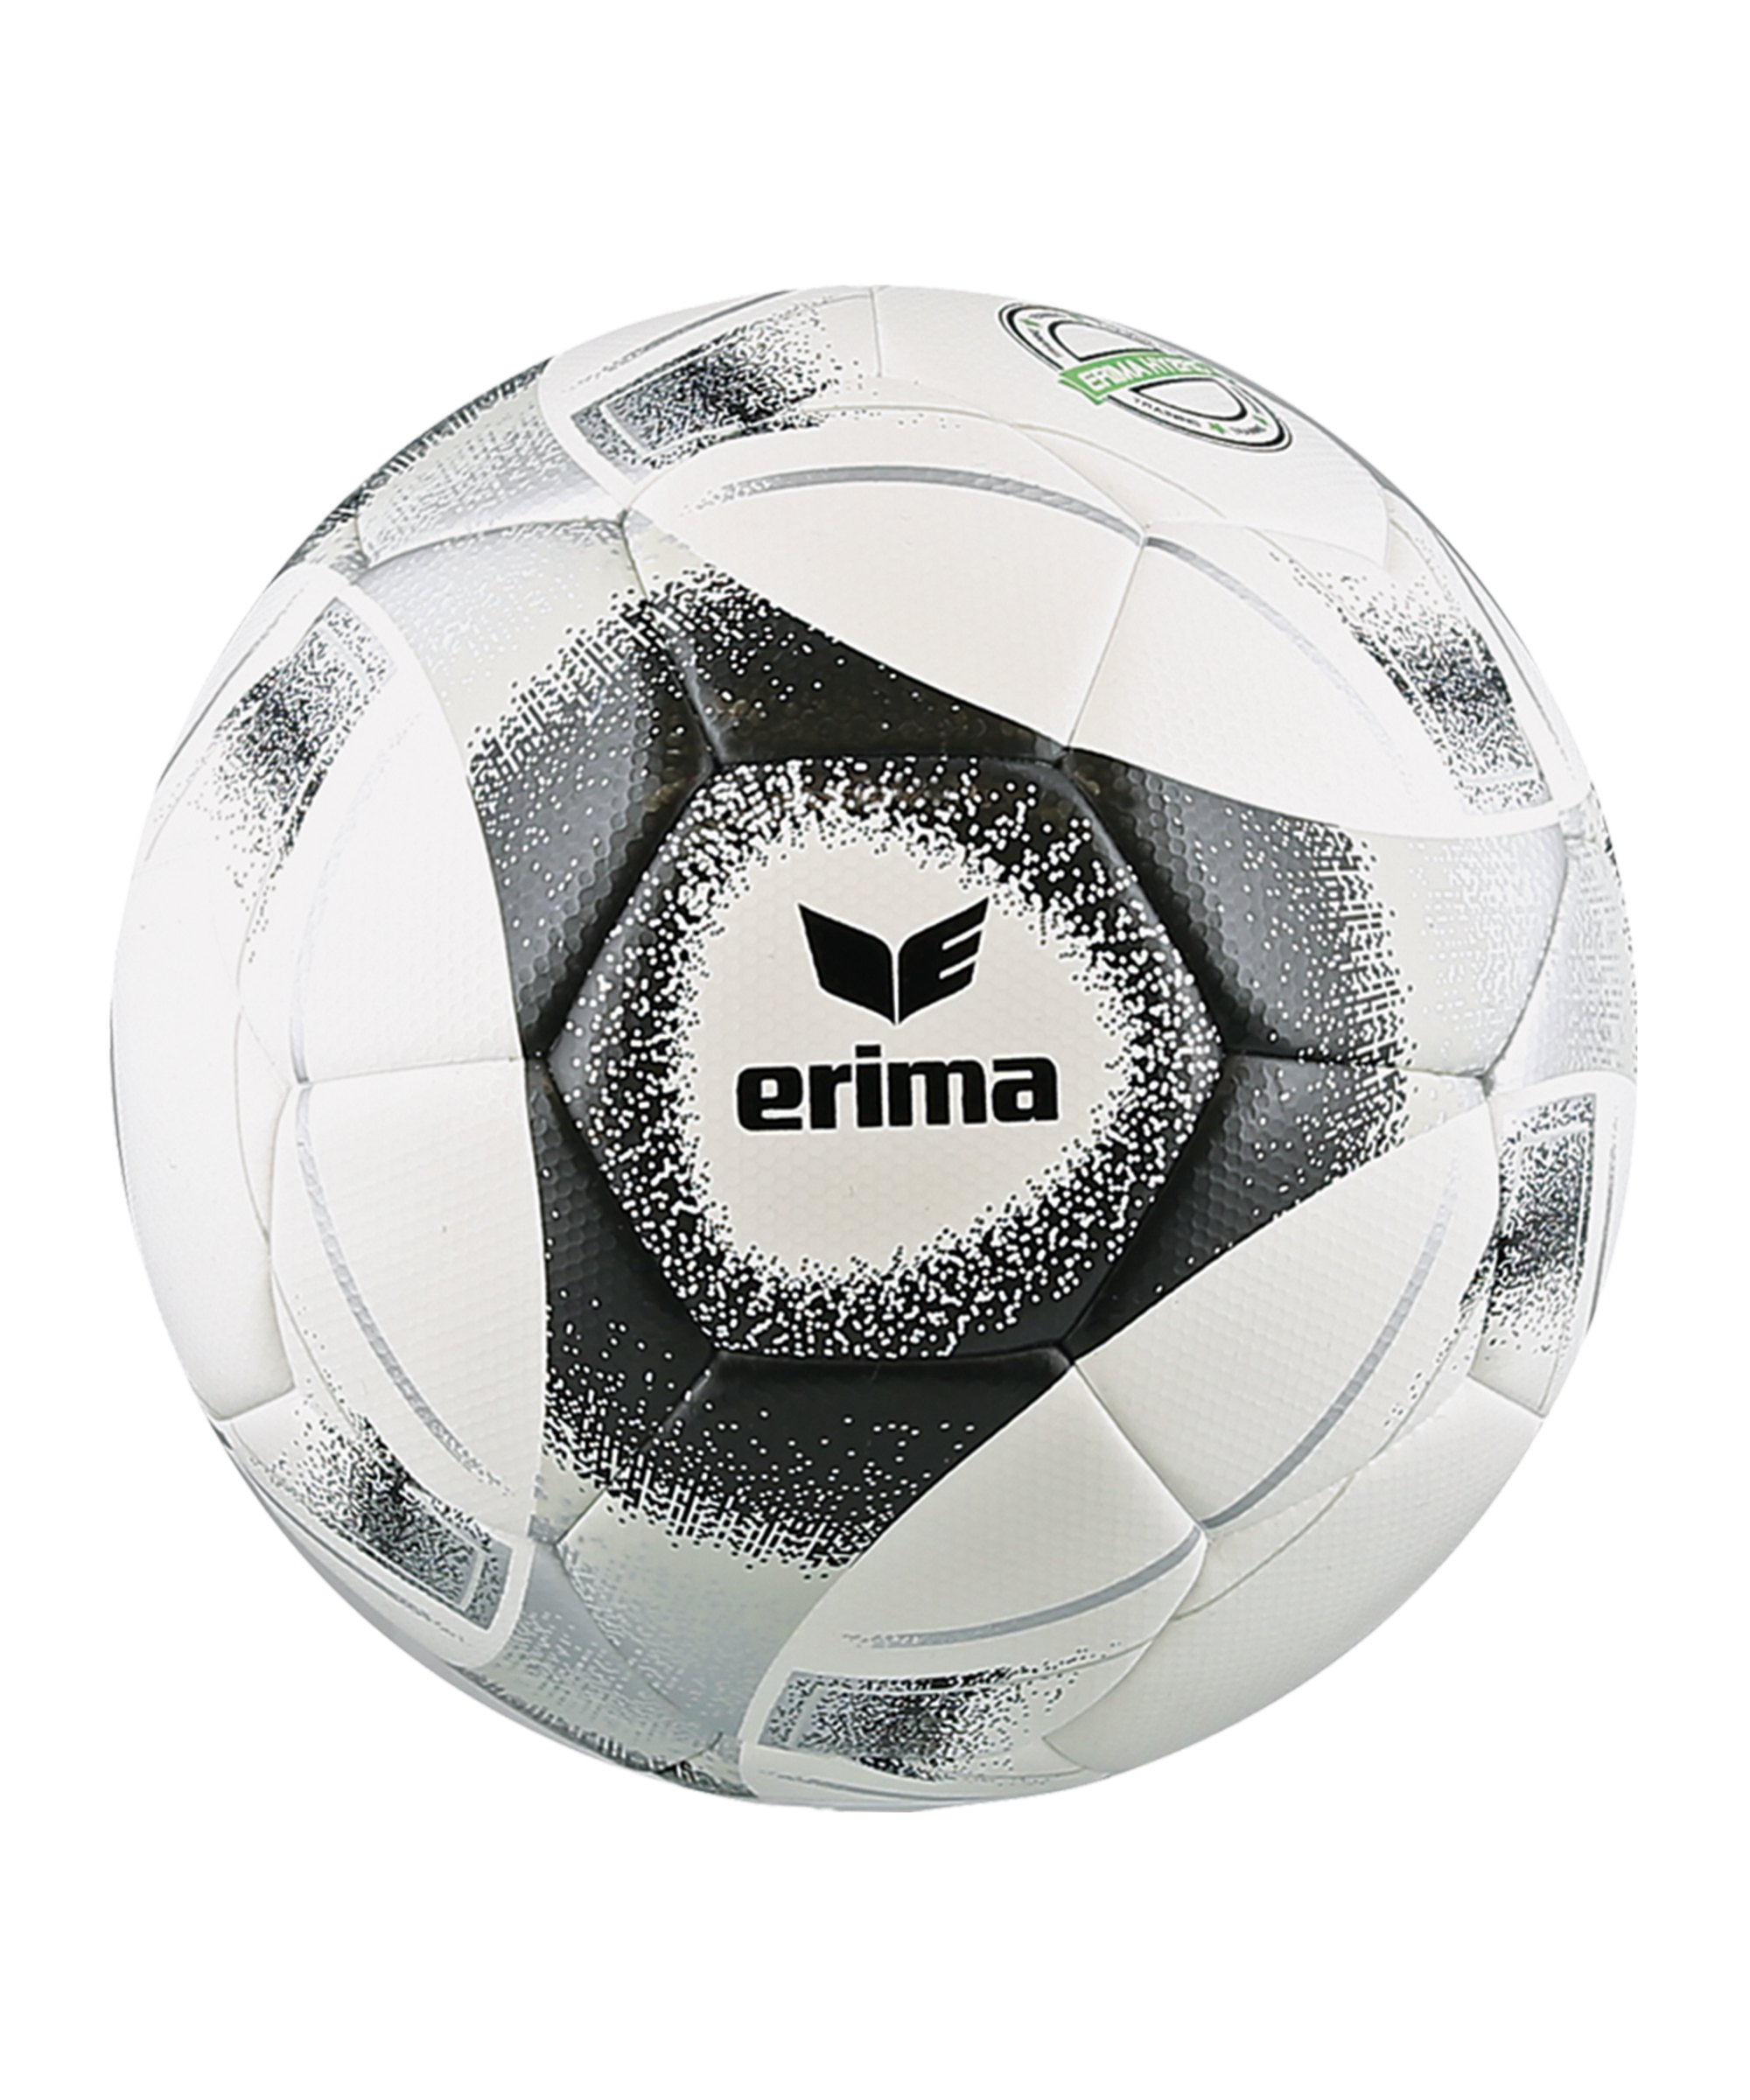 Erima Hybrid 2.0 Trainingsball Schwarz Weiss - schwarz